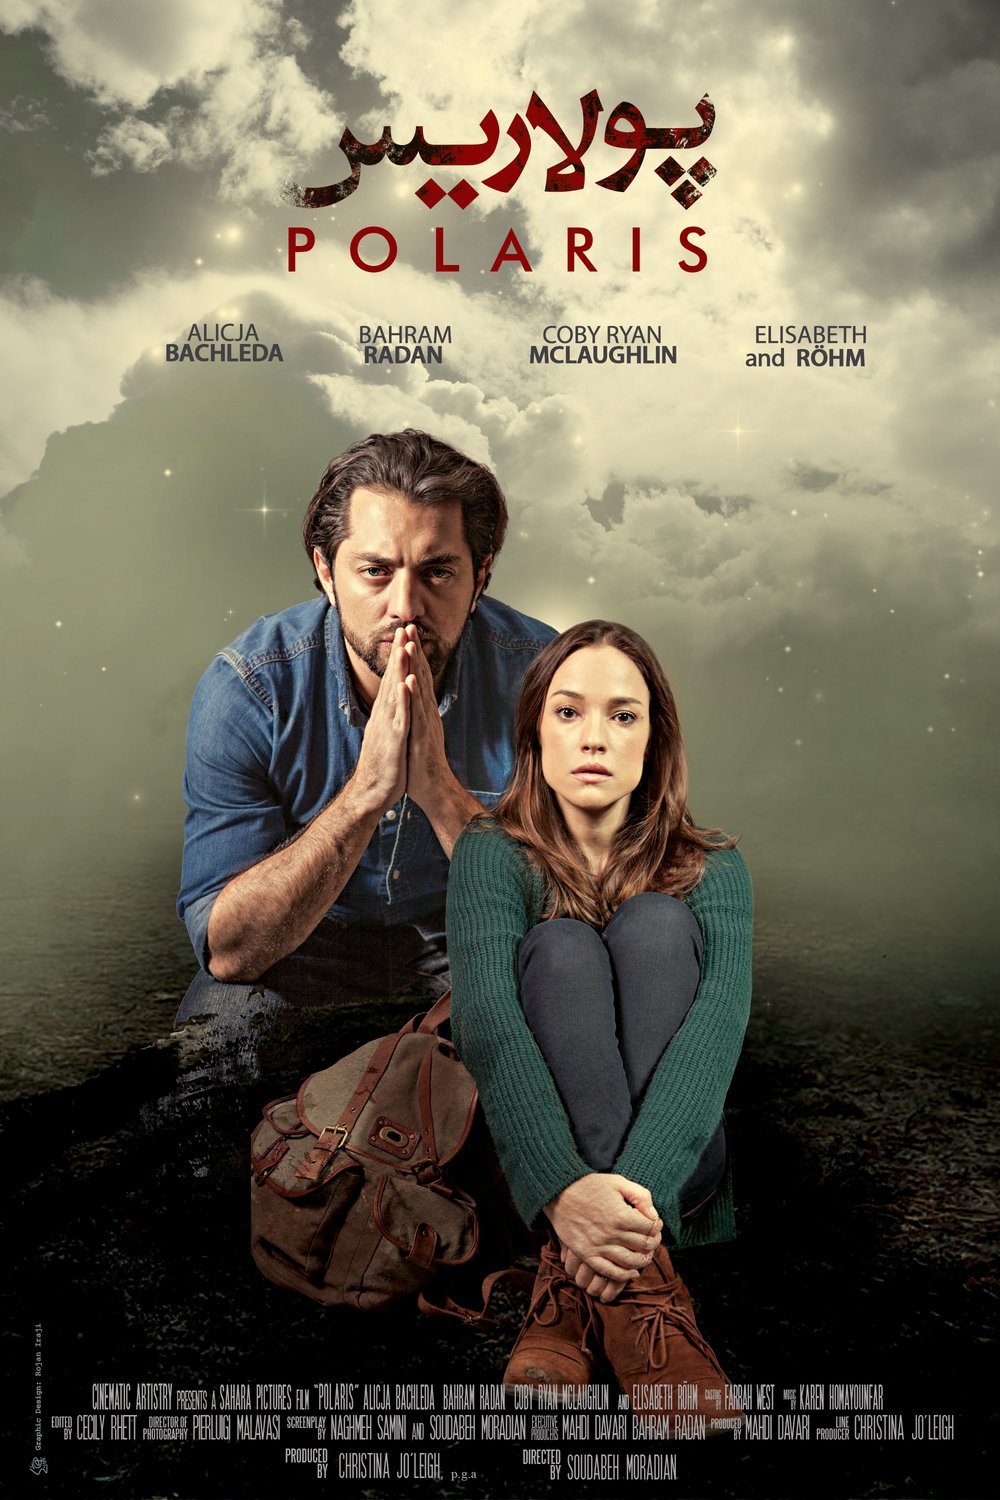 Poster of the movie Polaris